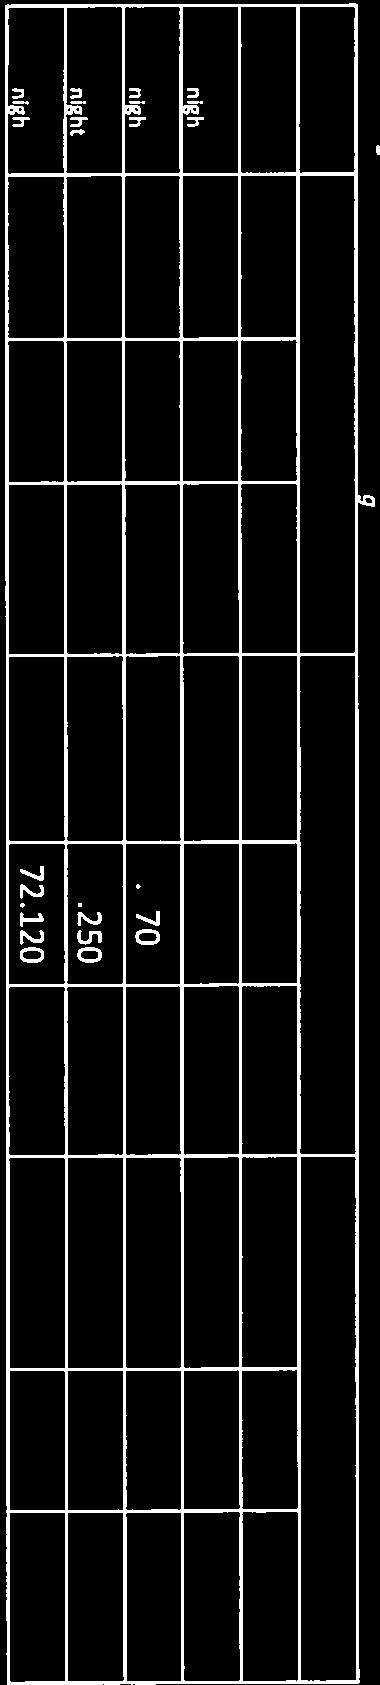 Tabel 4-12 Effecten Geluid Lnjght Oppervlak [km 2] Aantal_woningen Aantal ernstig slaapverstoorden Contour Huidig Ref** Verschil Huidig* Ref** Verschil Huidig* Ref** Verschil 50 Lfljght 0,56 2,83